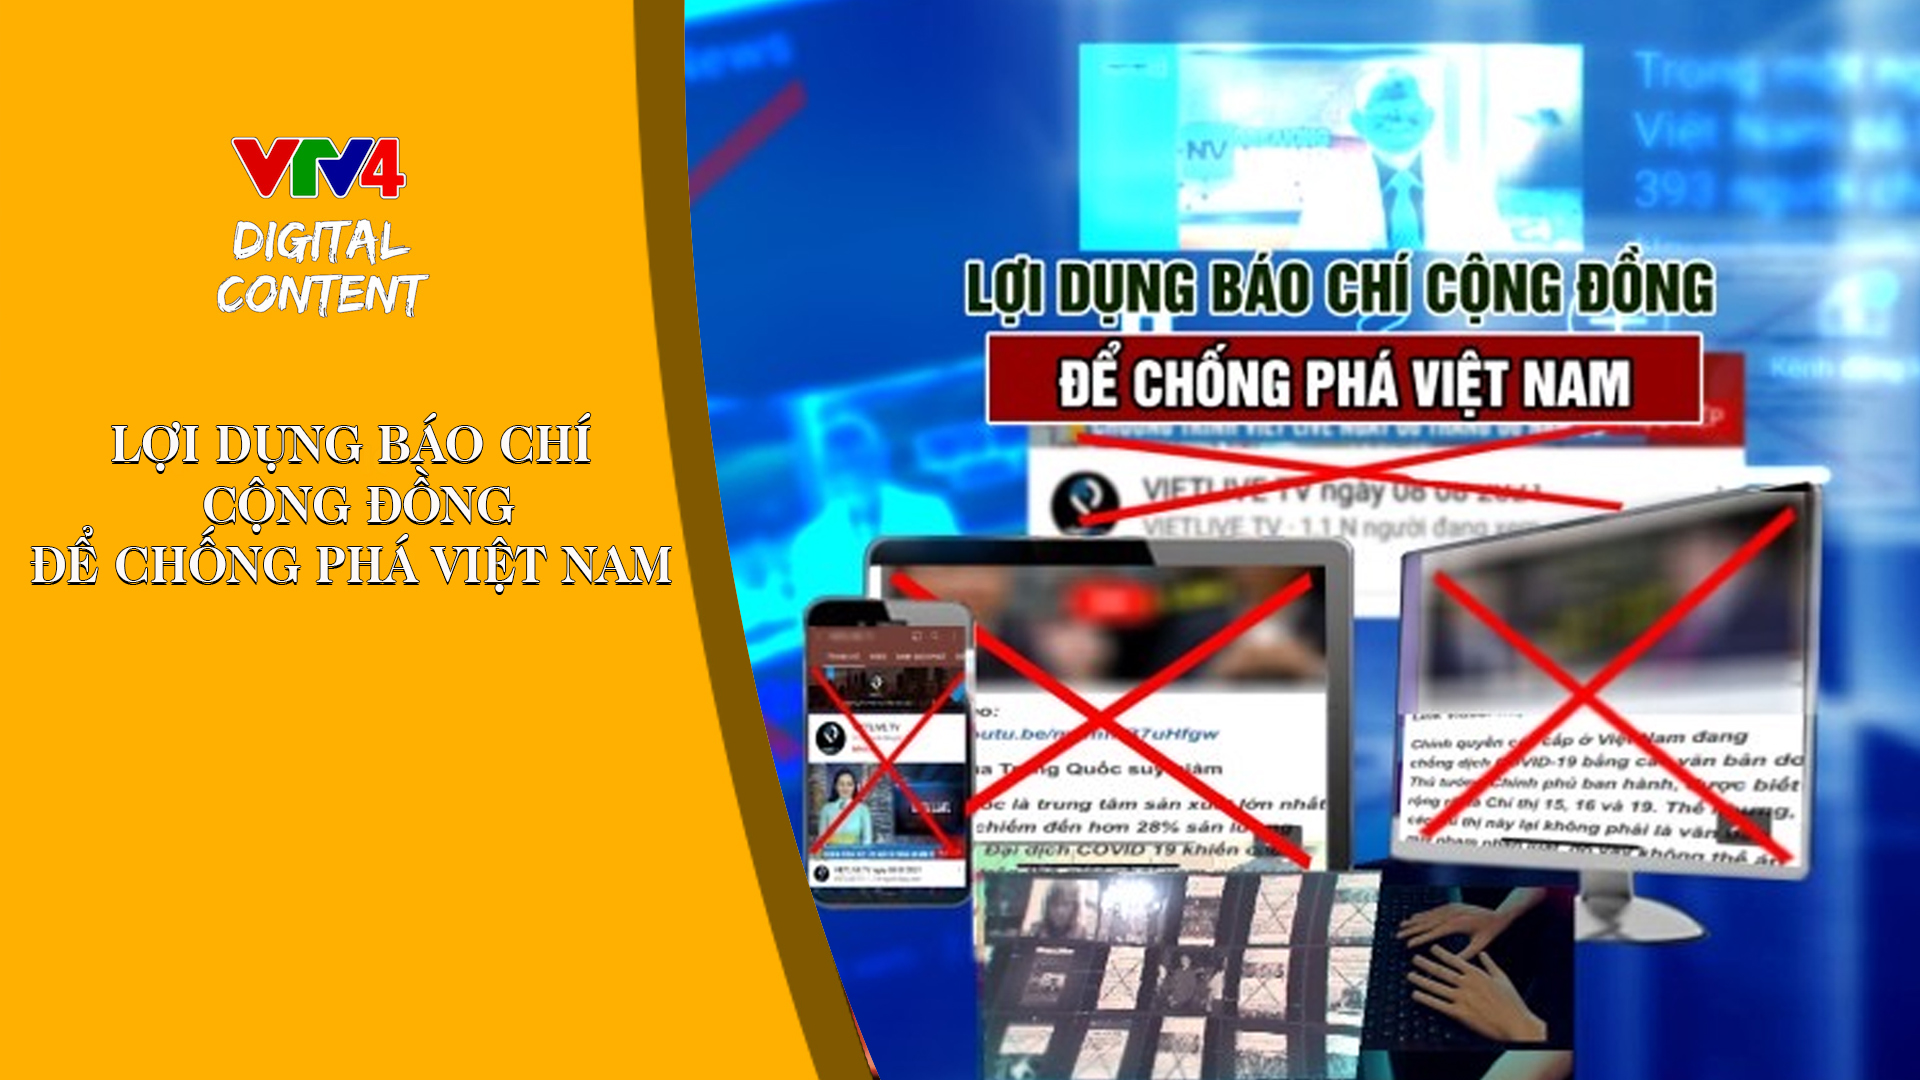 Lợi dụng báo chí cộng đồng để chống phá Việt Nam